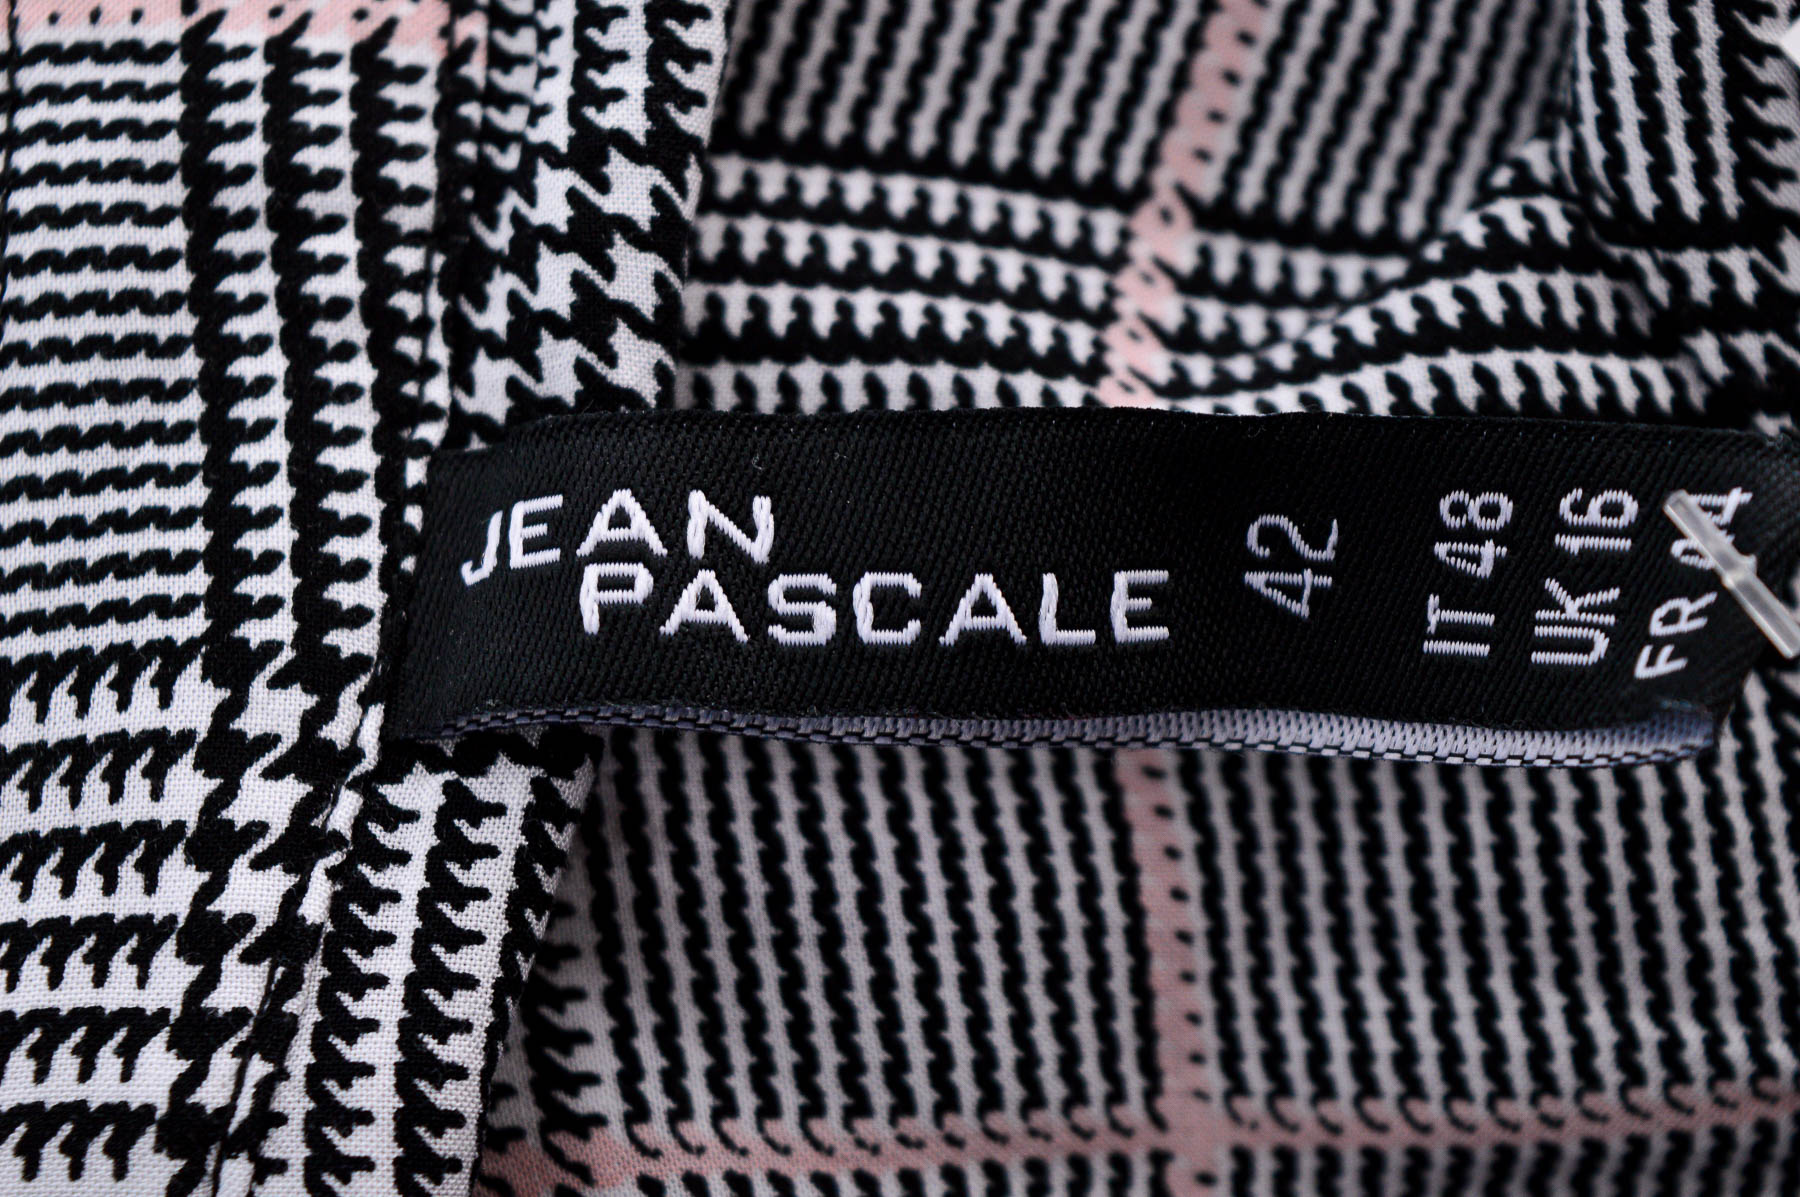 Γυναικείо πουκάμισο - Jean Pascale - 2